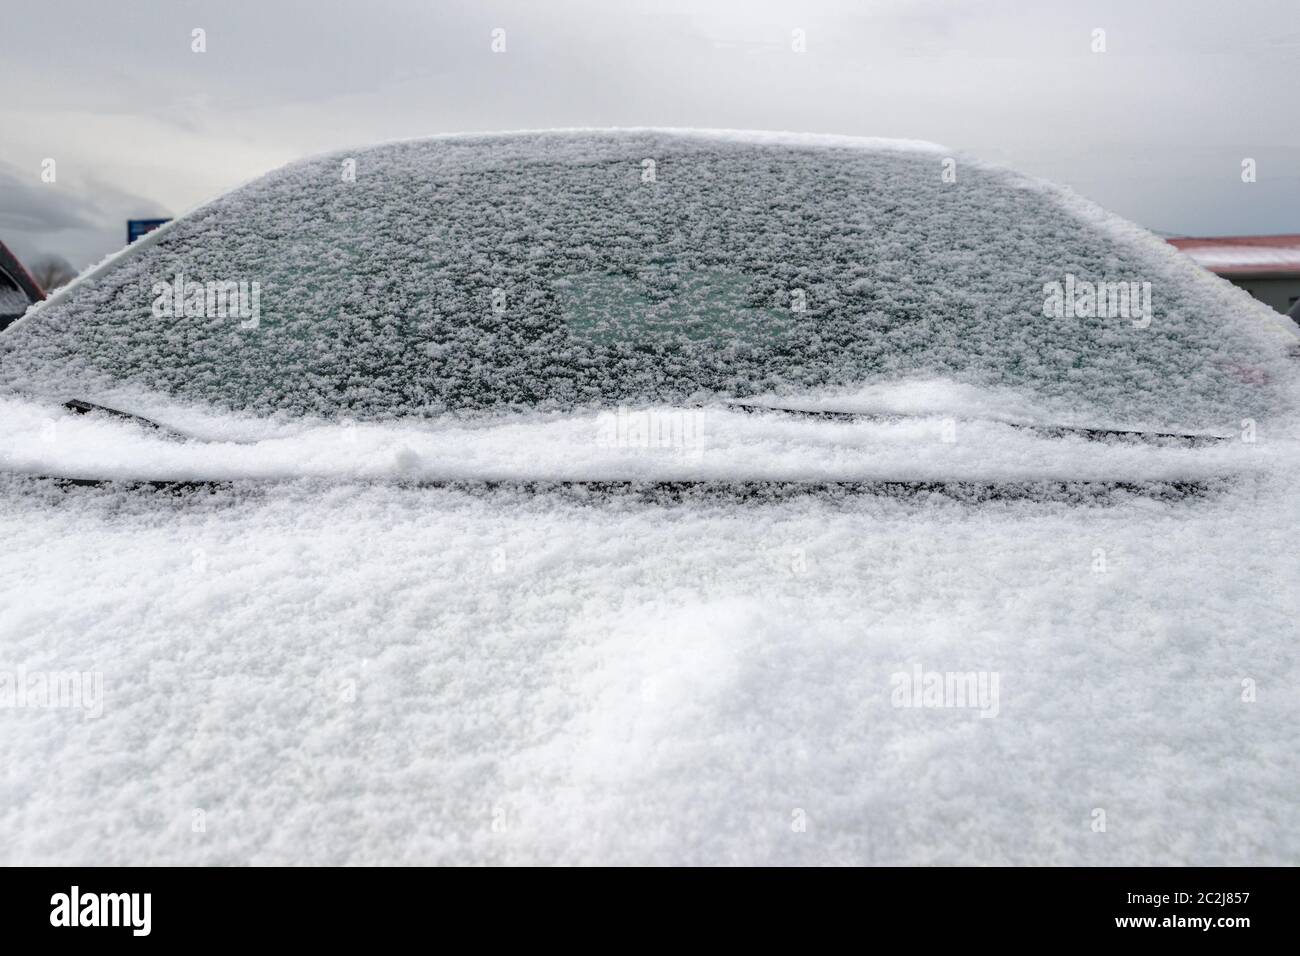 Nahaufnahme eines Autos mit schneebedeckter Windschutzscheibe und Motorhaube. Das Auto ist nicht identifizierbar. Wolkenbedecktem Himmel über. Stockfoto